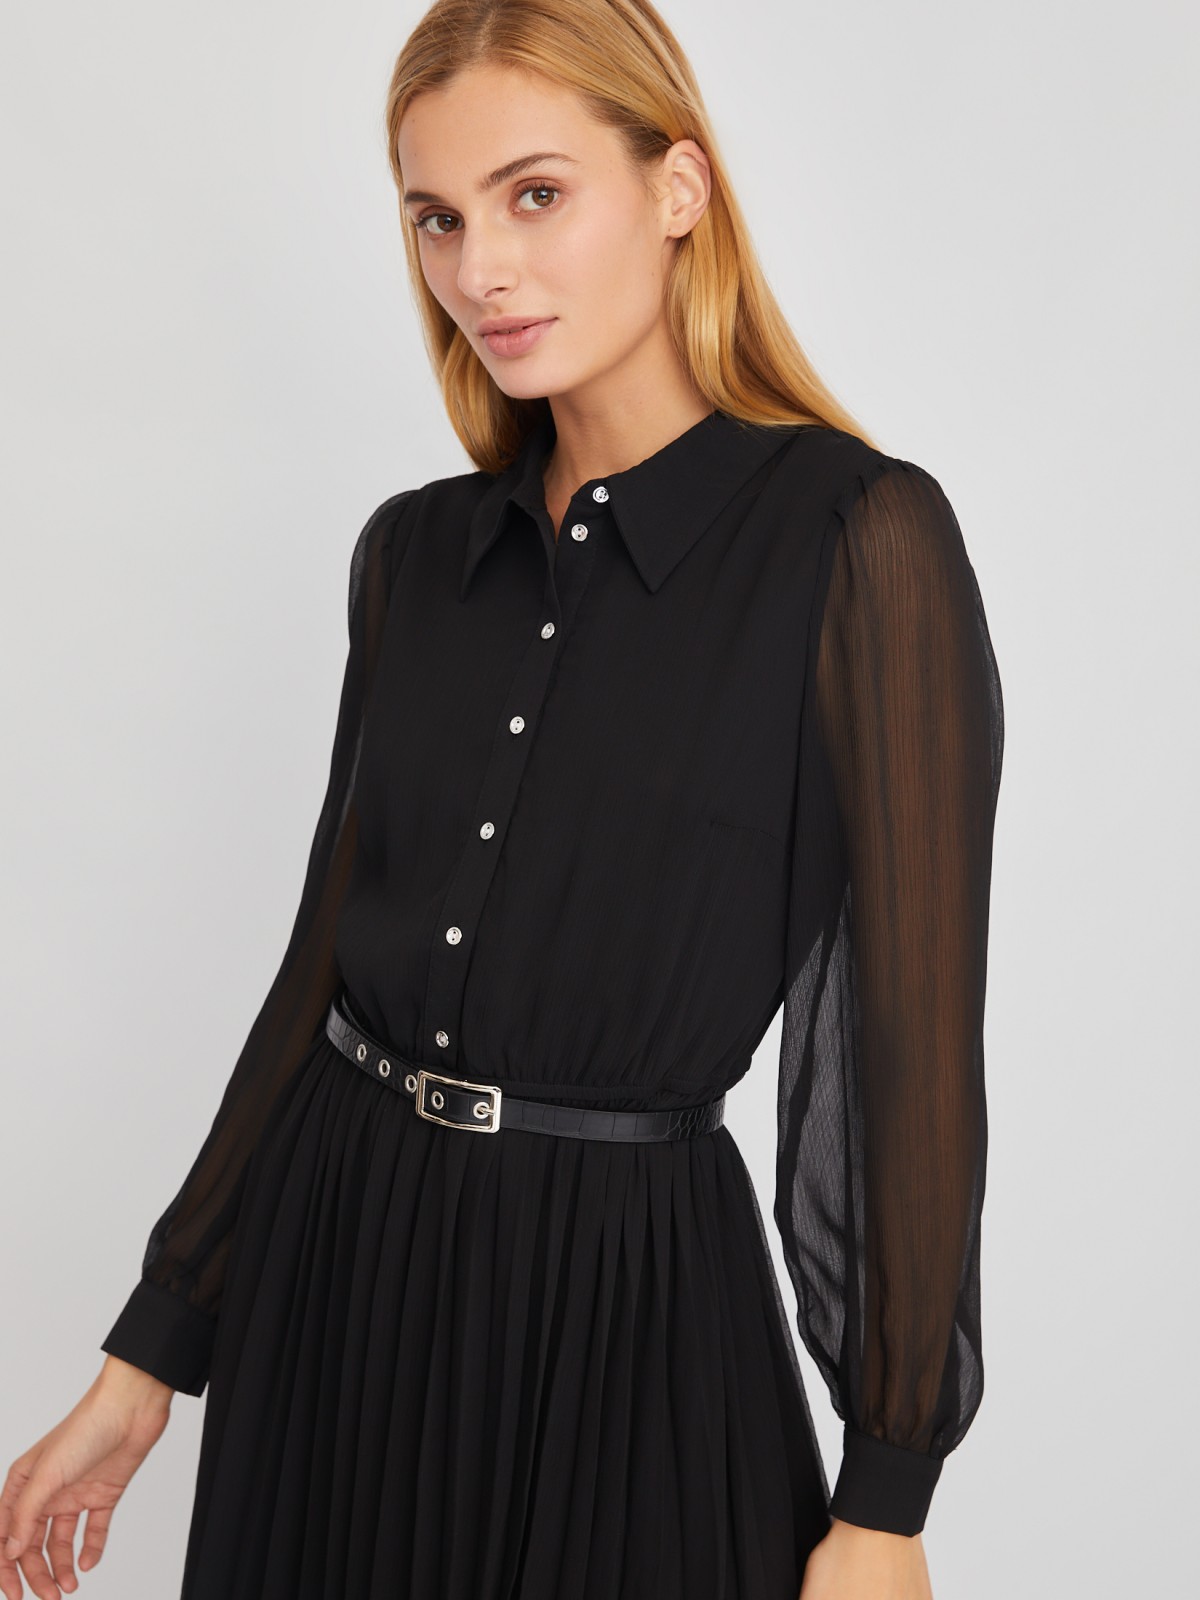 Шифоновое платье-рубашка длины миди с плиссировкой и акцентном на талии zolla 024118262033, цвет черный, размер S - фото 4